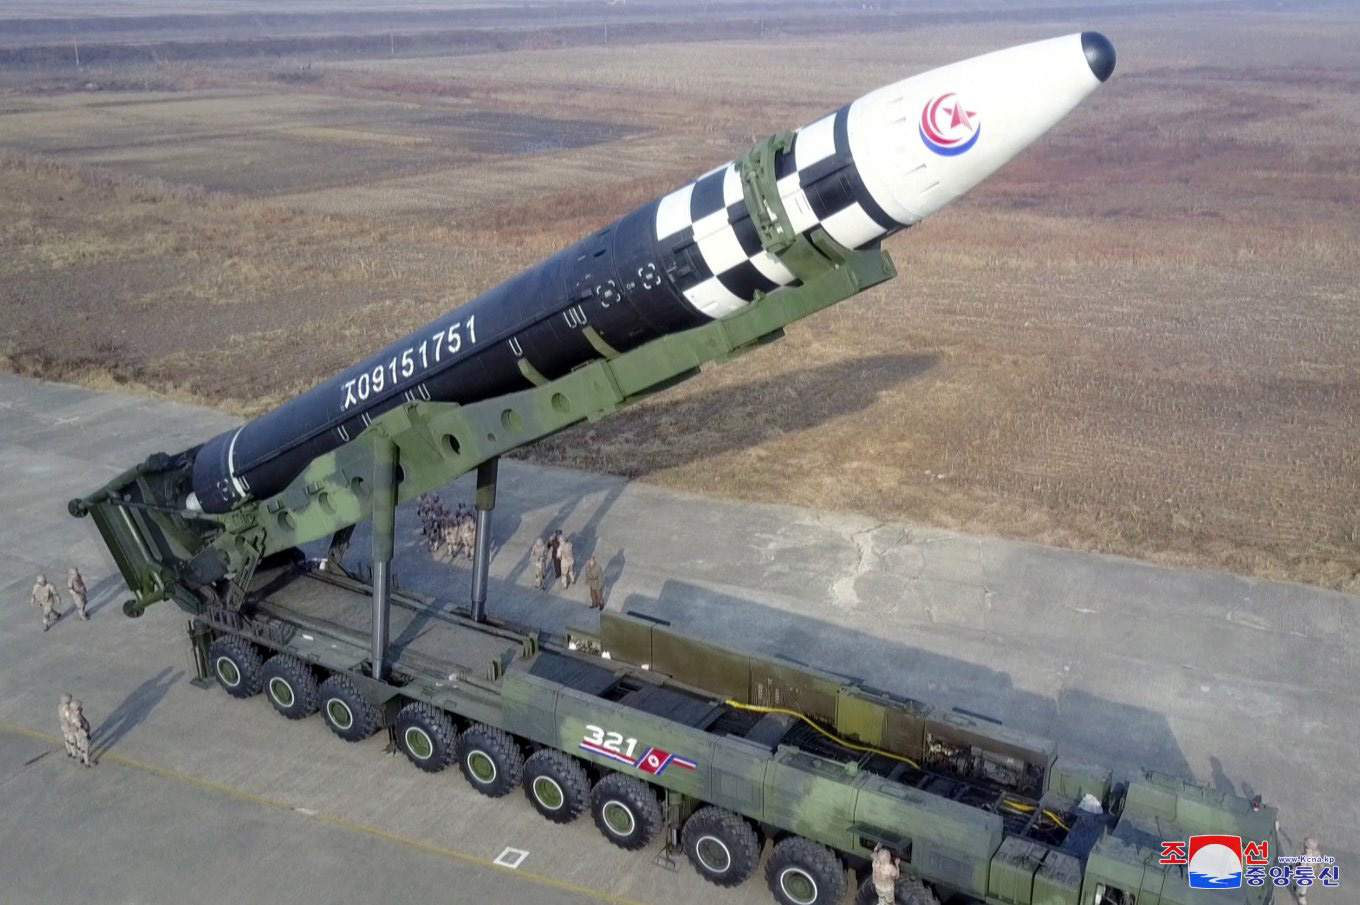 North Korean Hwasong-17 missile, Defense Express